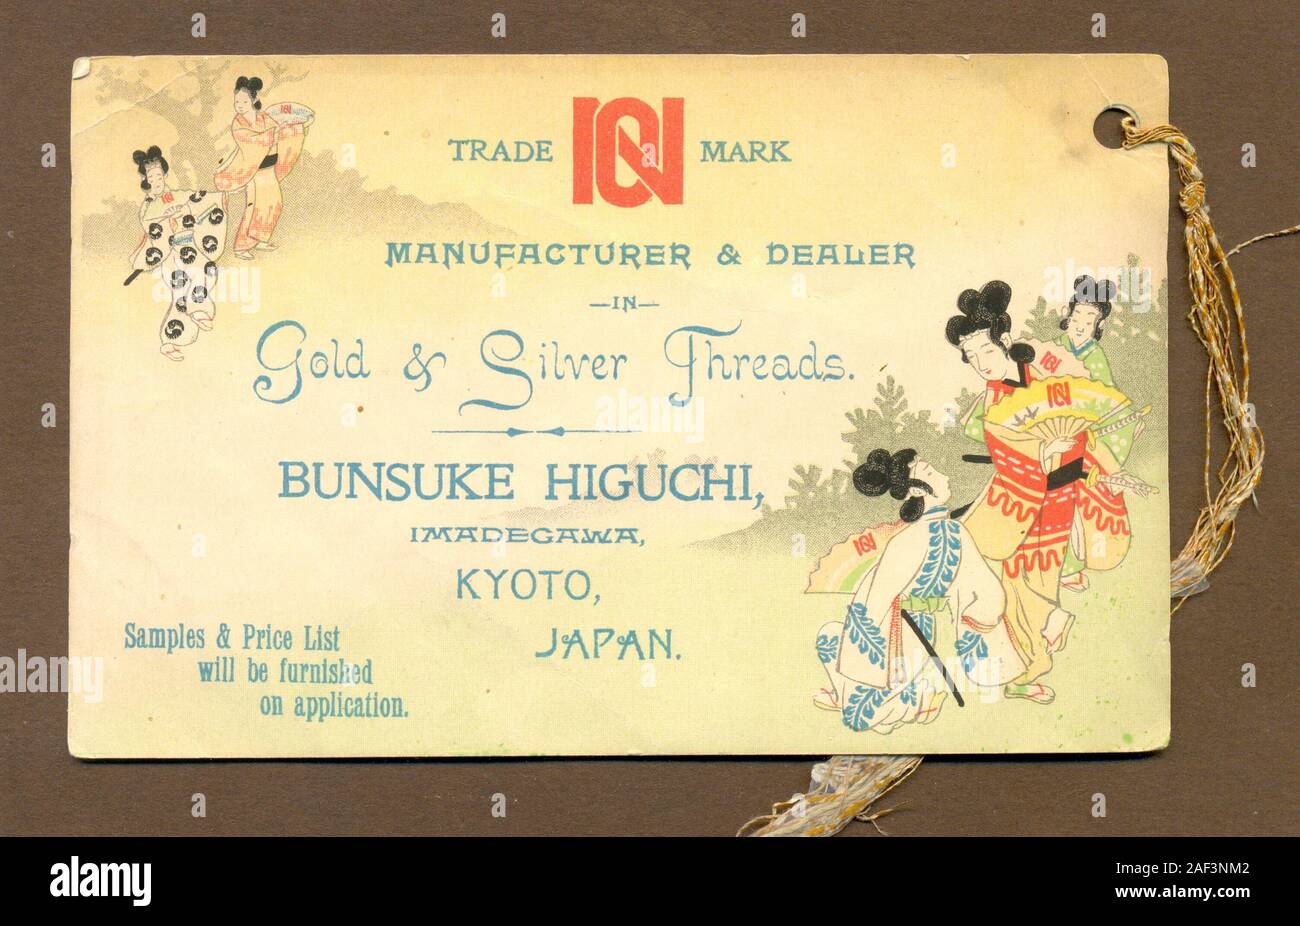 Publicité japonaise pour l'étiquette fabricant et négociant en Or & Argent Threads vers 1906 Banque D'Images